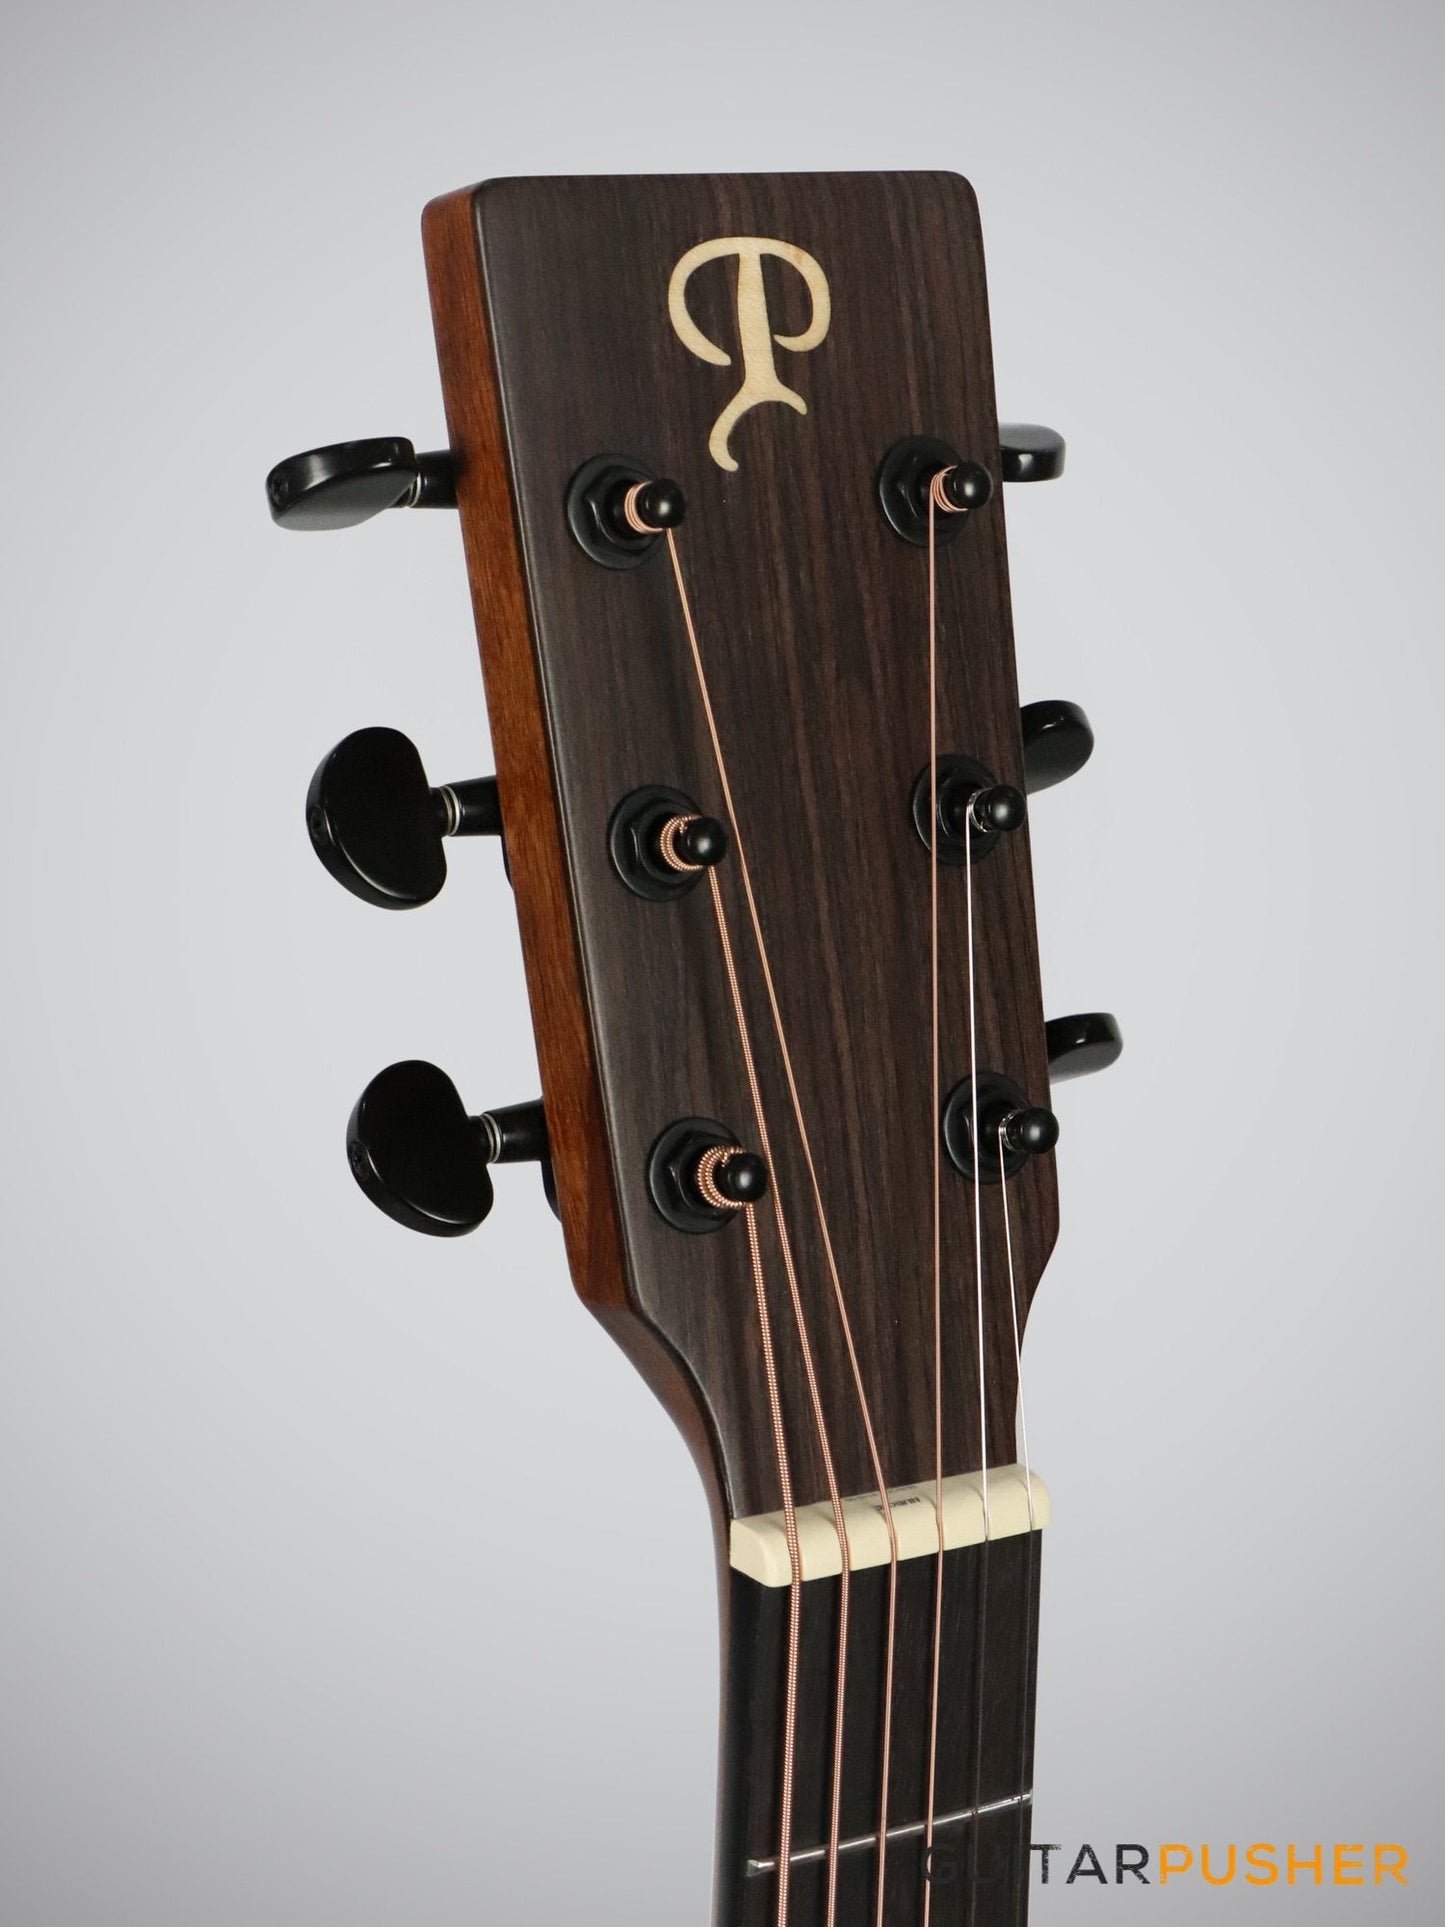 Phoebus PG-20ce v3 OM (3rd Gen.) Acoustic-Electric Guitar w/ Gig Bag - GuitarPusher